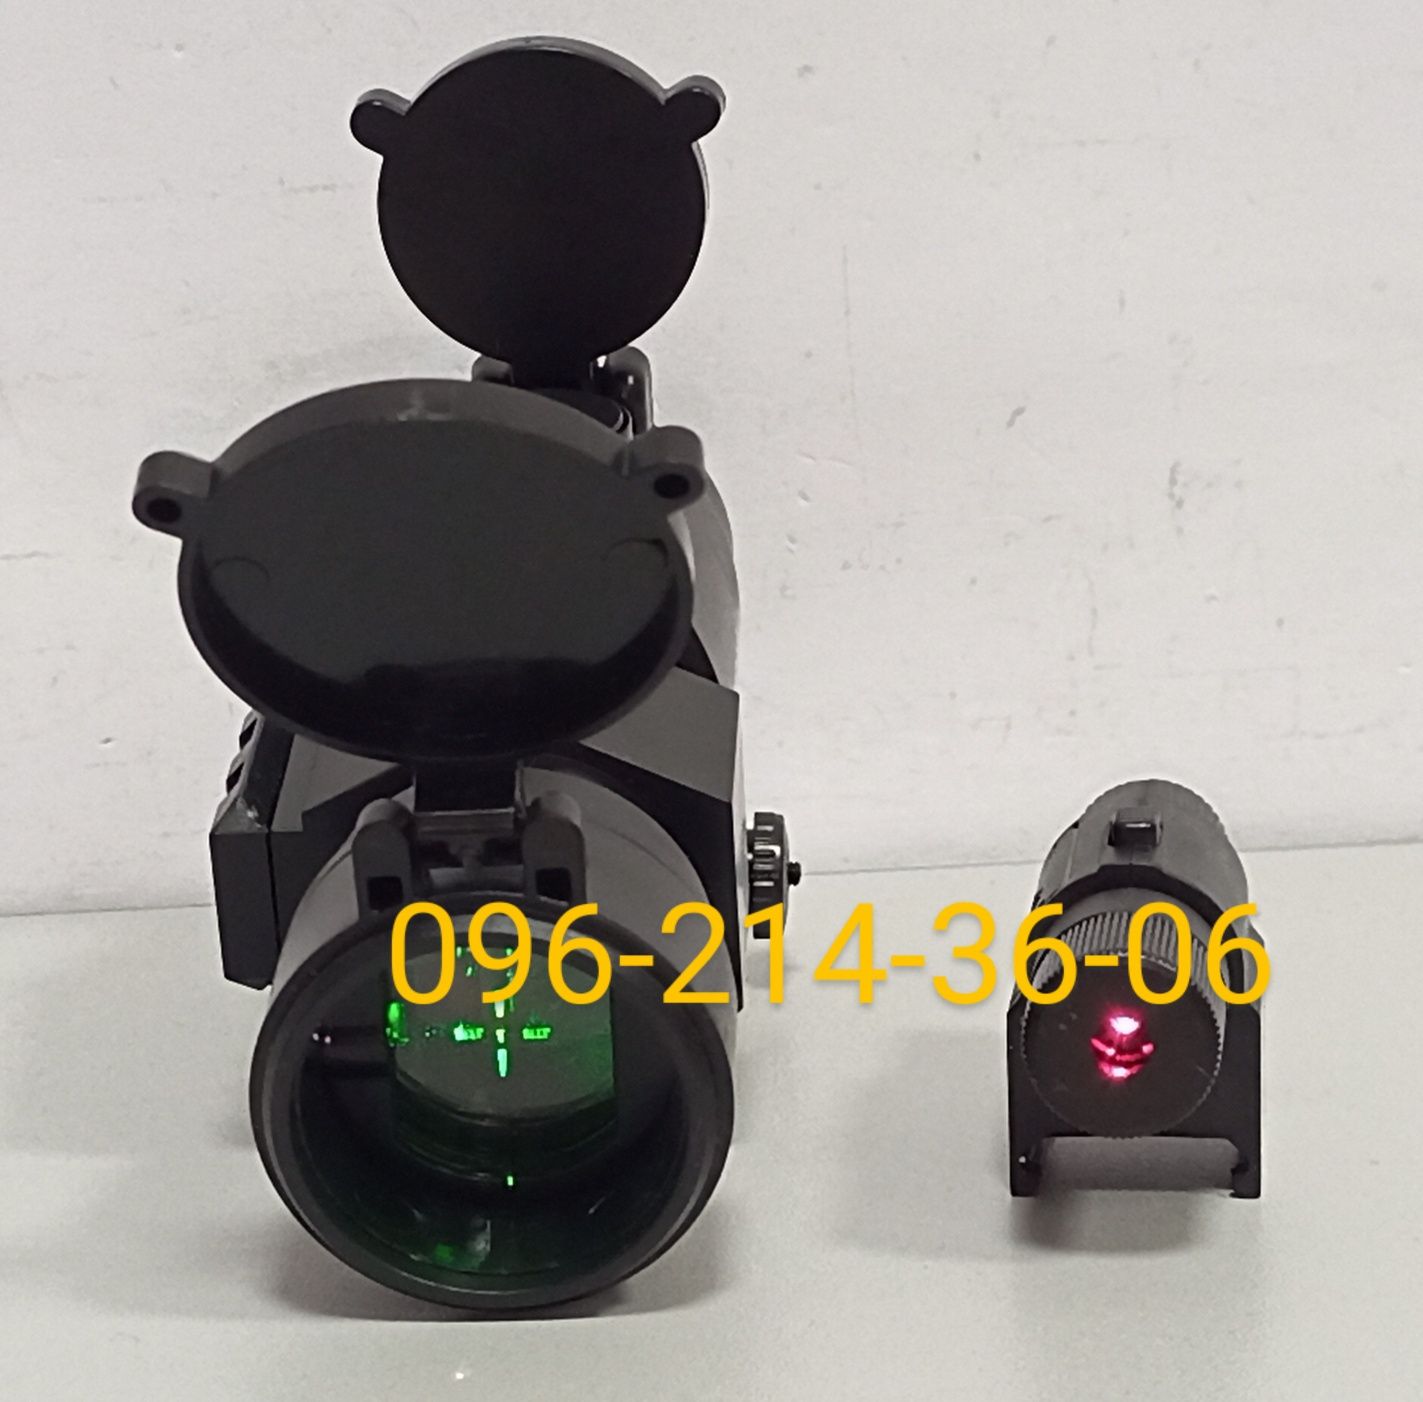 Акция! ХИТ! Детский автомат M416 оптический коллиматорный и лазерный п